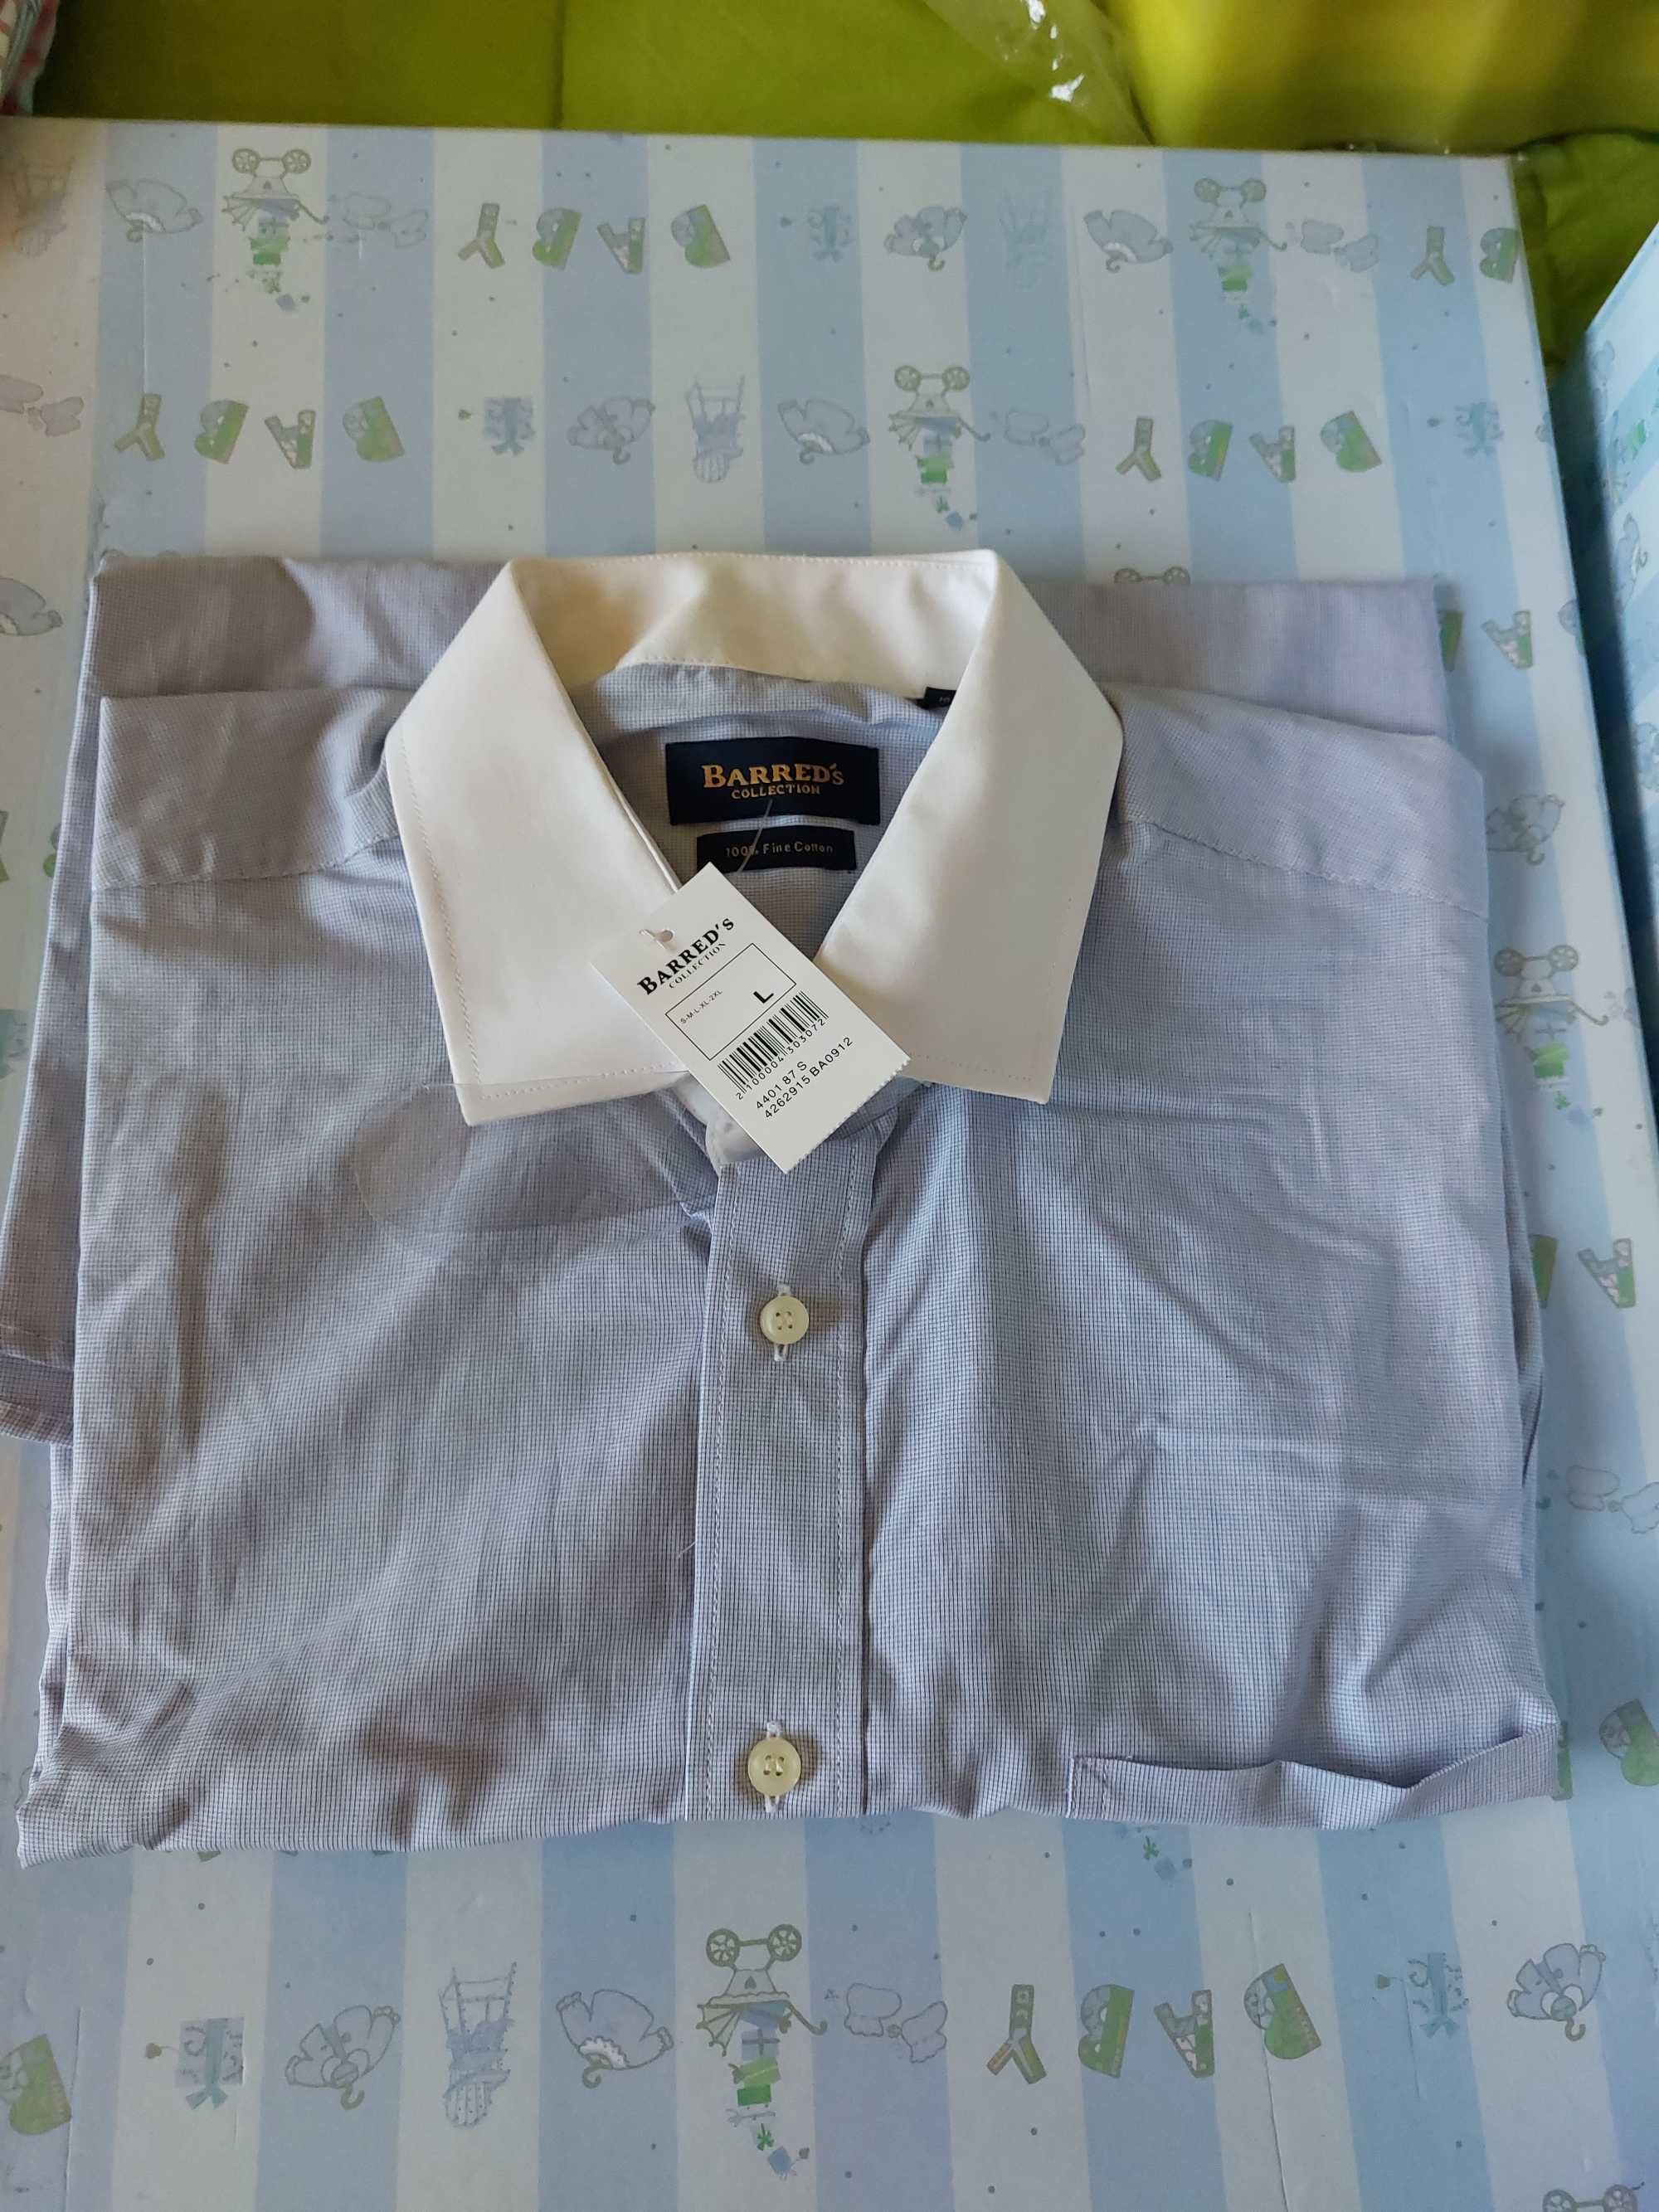 Camisa Barred's - Novas (Preço unitário)